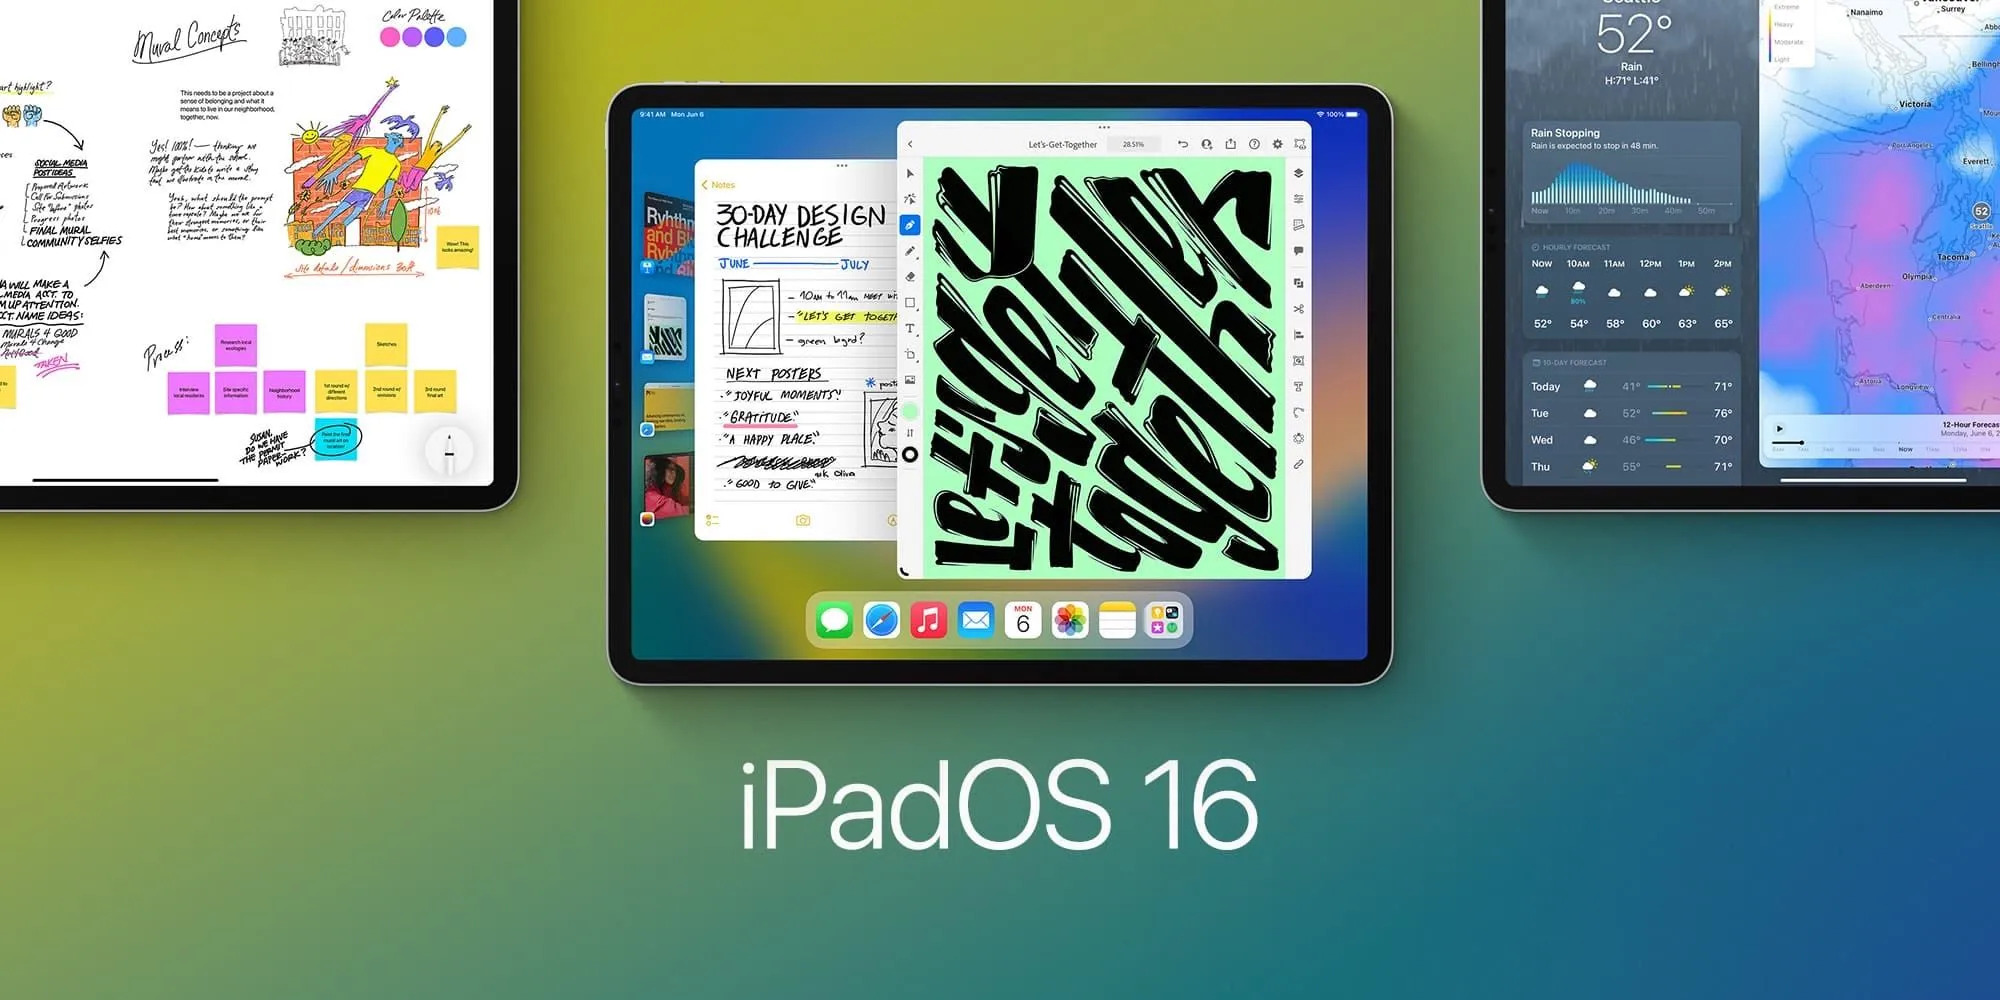 اپل تاخیر در عرضه iPadOS 16 را تایید کرد